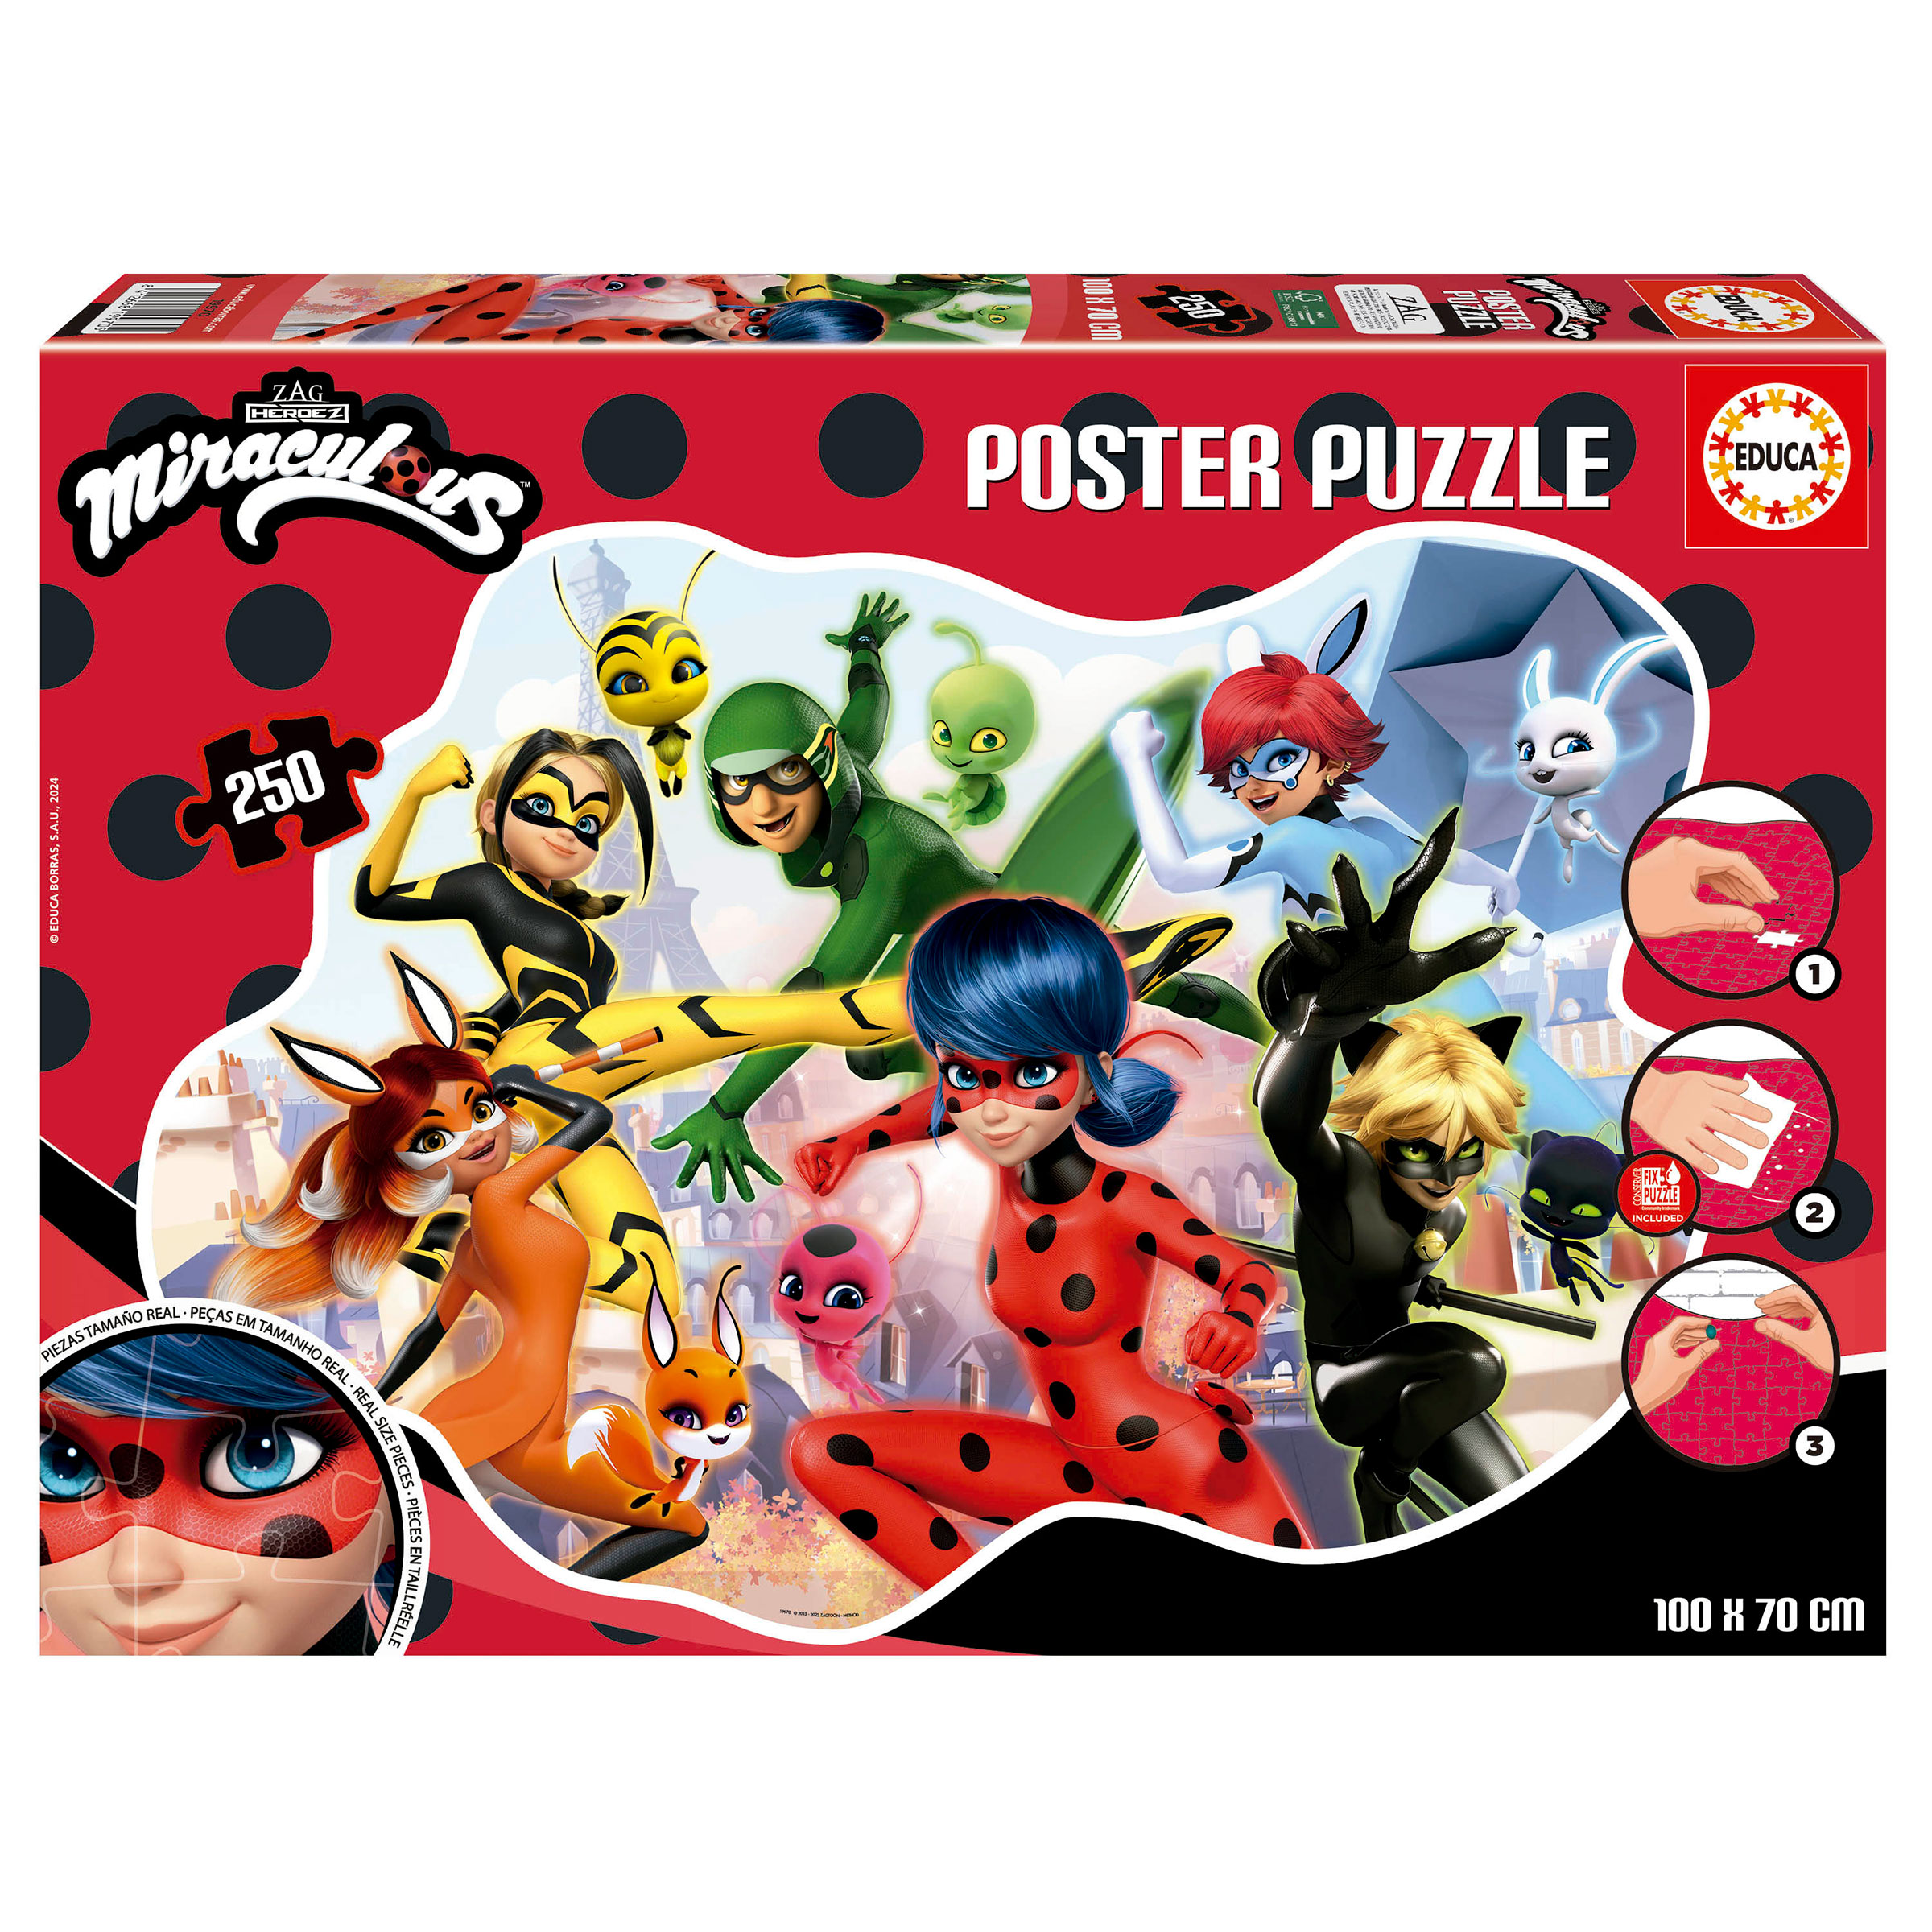 250 Poster Puzzle Ladybug